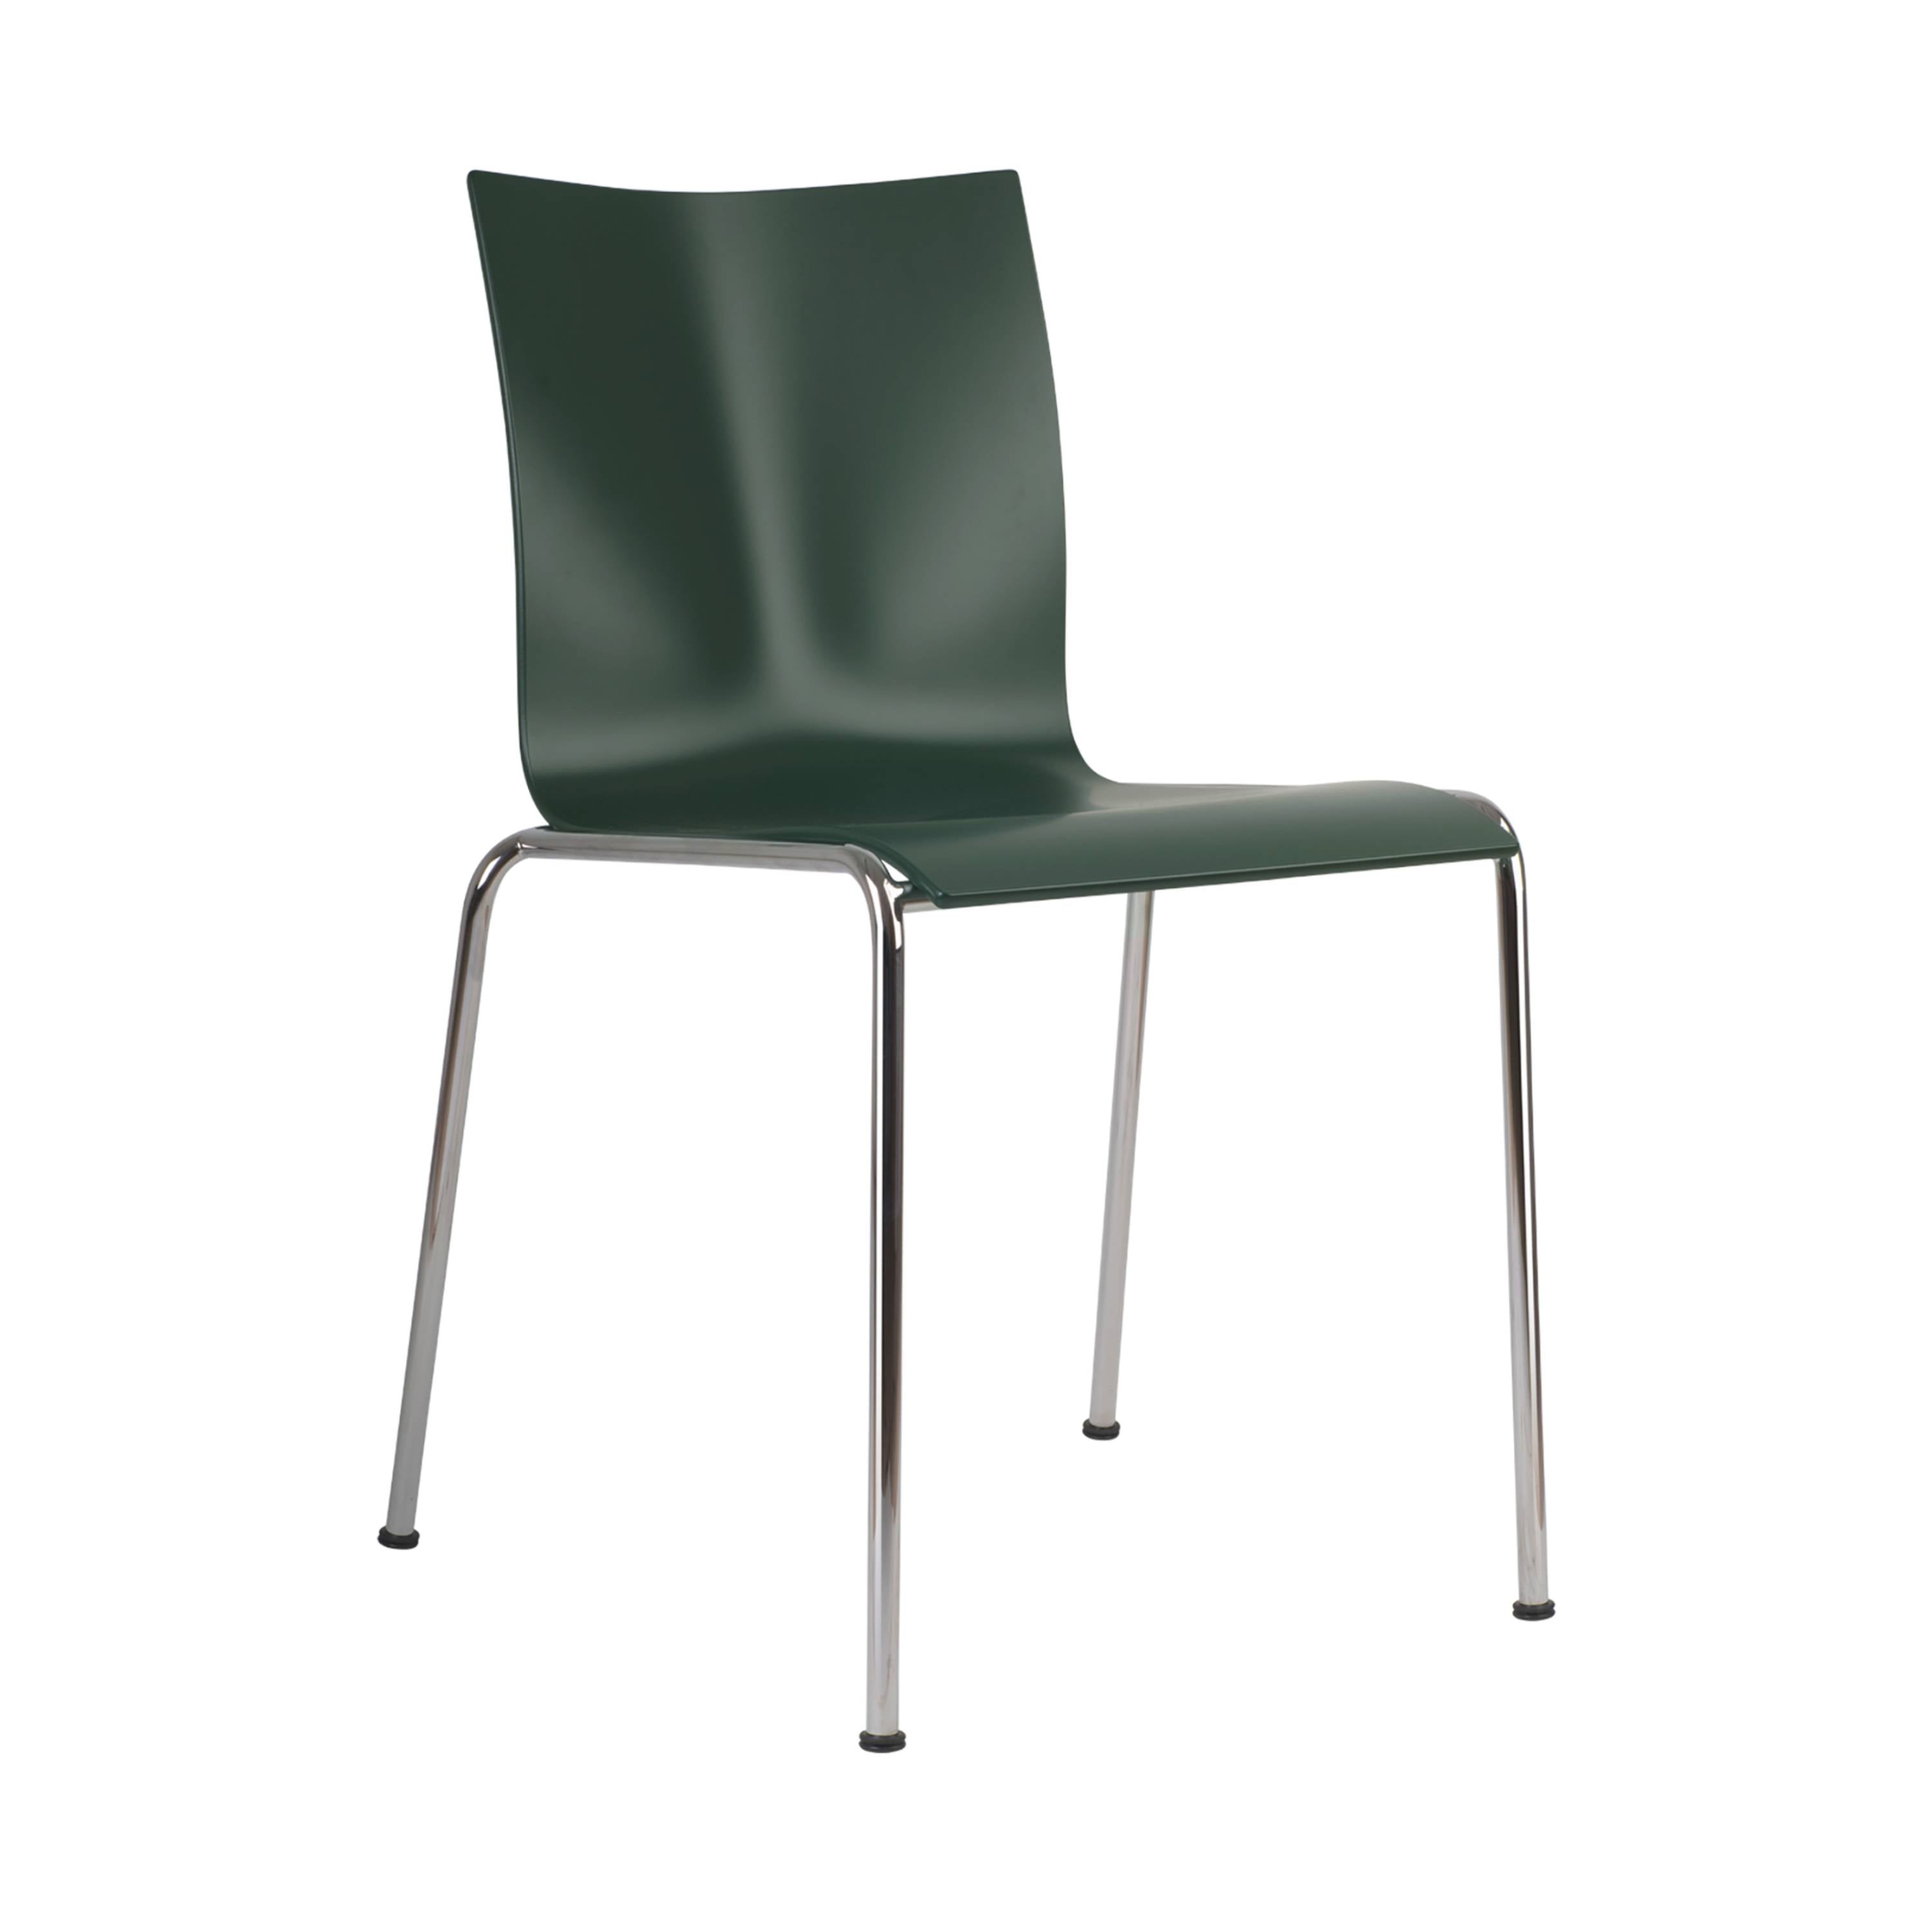 Chairik 101 Chair: Lacquer + Fir Green